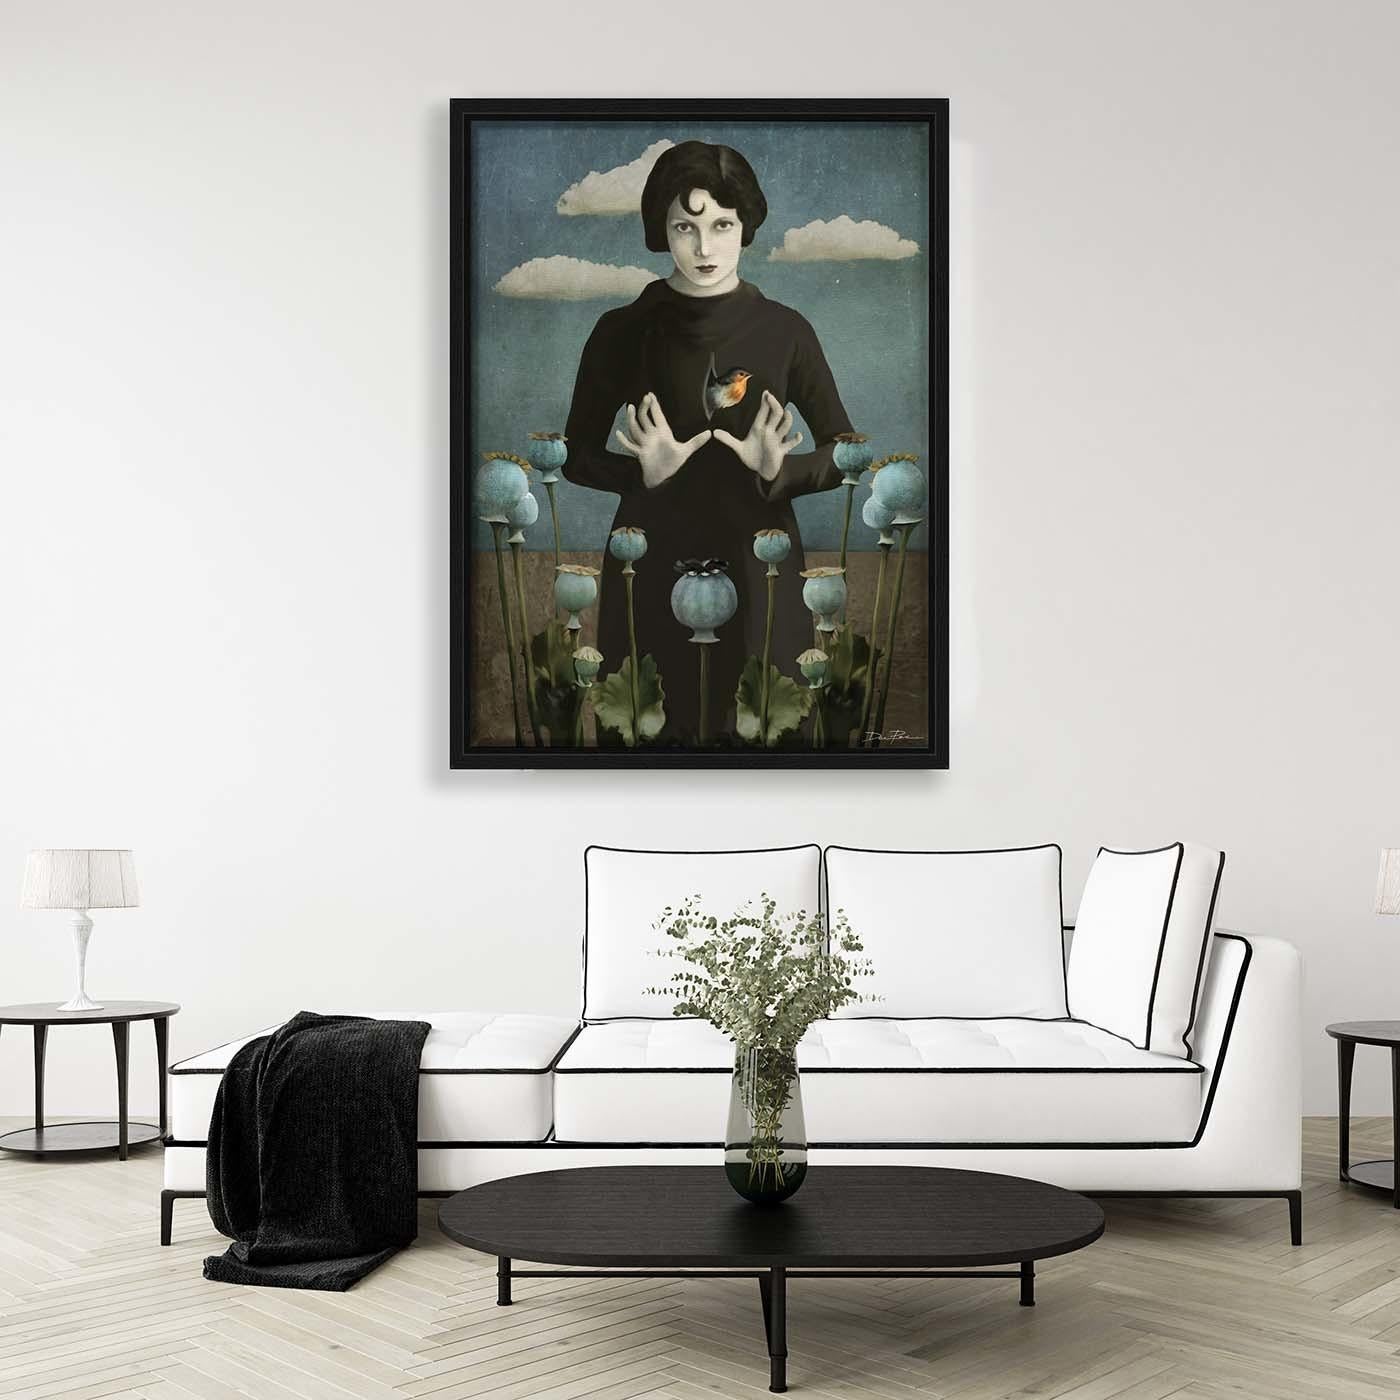 Inspirée par la poésie de Charles Baudelaire, cette peinture numérique est basée sur la photographie d'une célèbre danseuse allemande du début du XXe siècle. Au premier plan, des boutons de pavot évoquent un état de conscience altéré par la drogue,